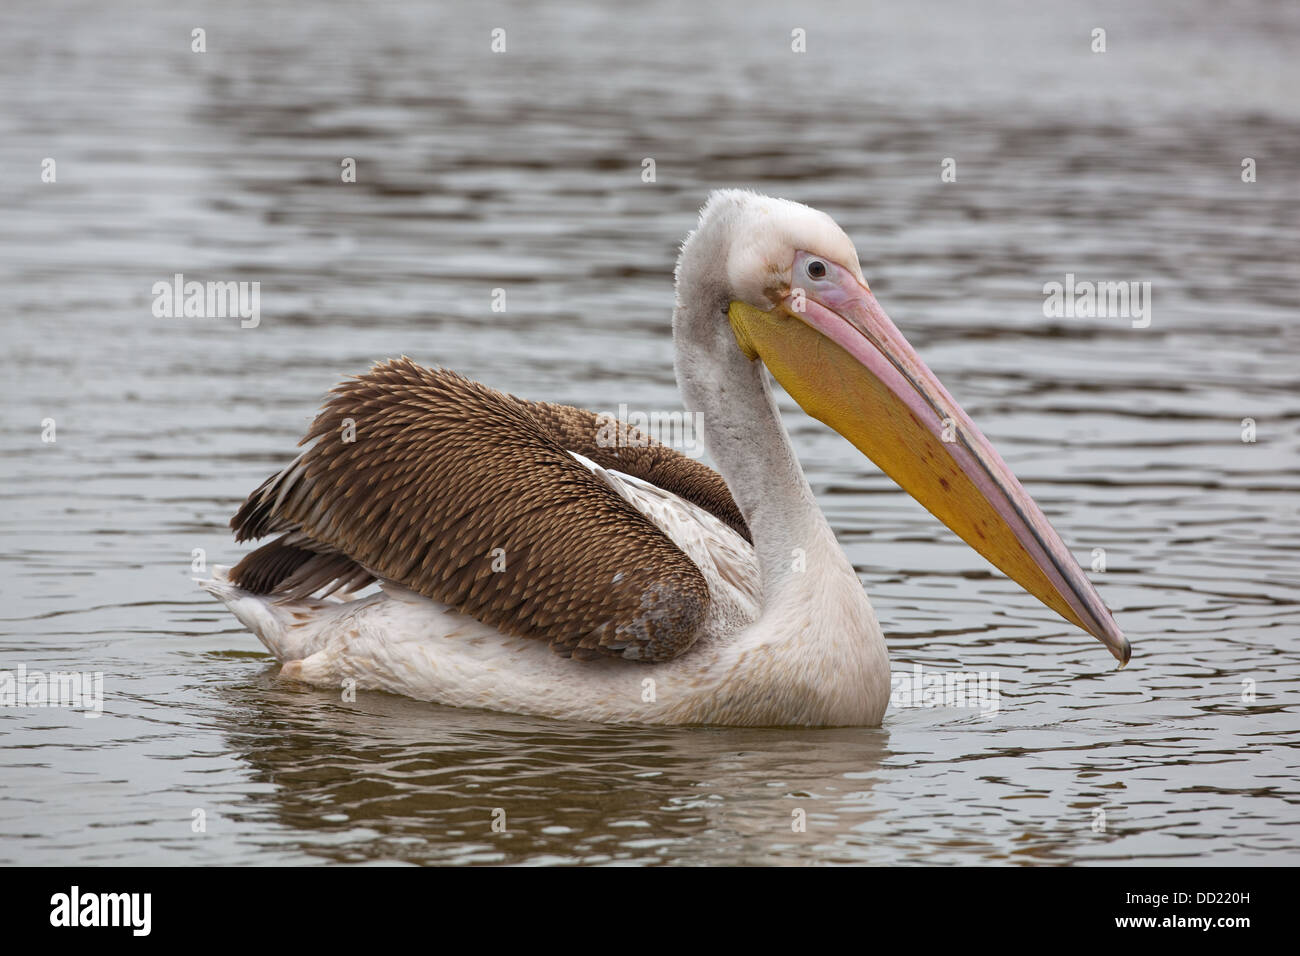 Great White Pelican (Pellicani onocrotalus). Piumaggio immaturi. Foto Stock